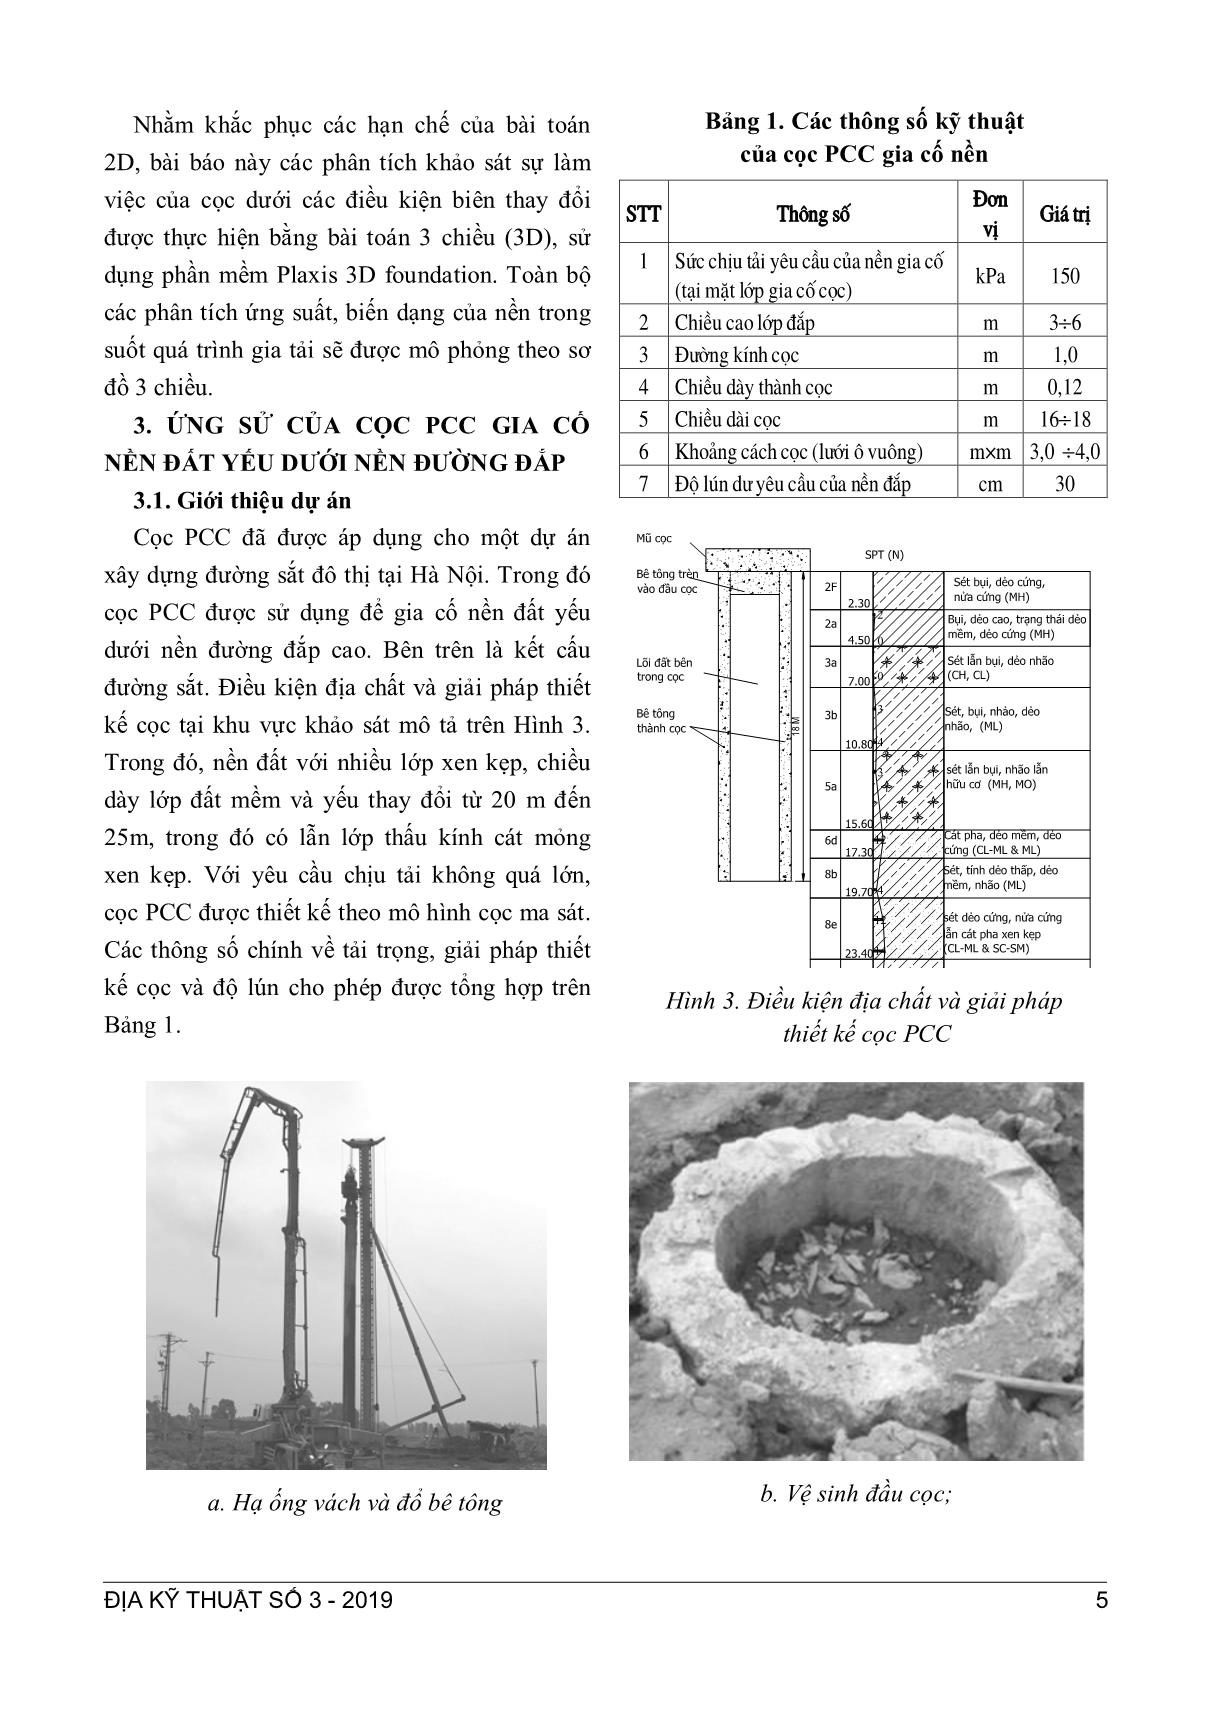 Nghiên cứu ứng xử của cọc ống bê tông gia cố nền đất yếu dưới nền đường đắp bằng phân tích phương trình hóa học trang 3